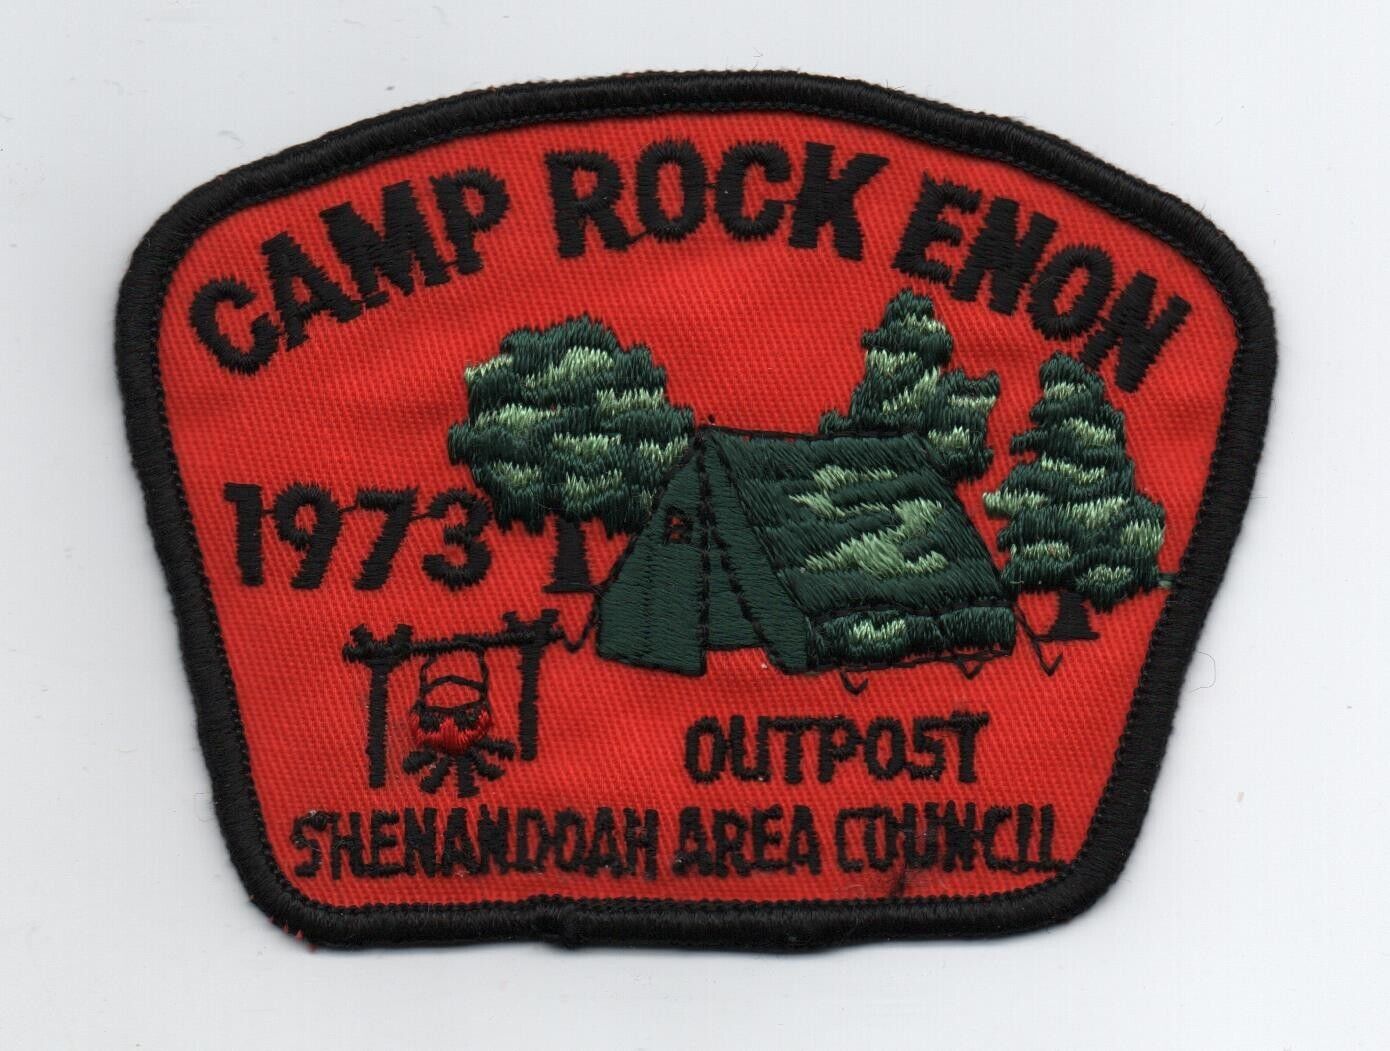 1973 Camp Rock Enon Outpost, (Shenandoah Area Council) Patch, Cloth Back, Mint